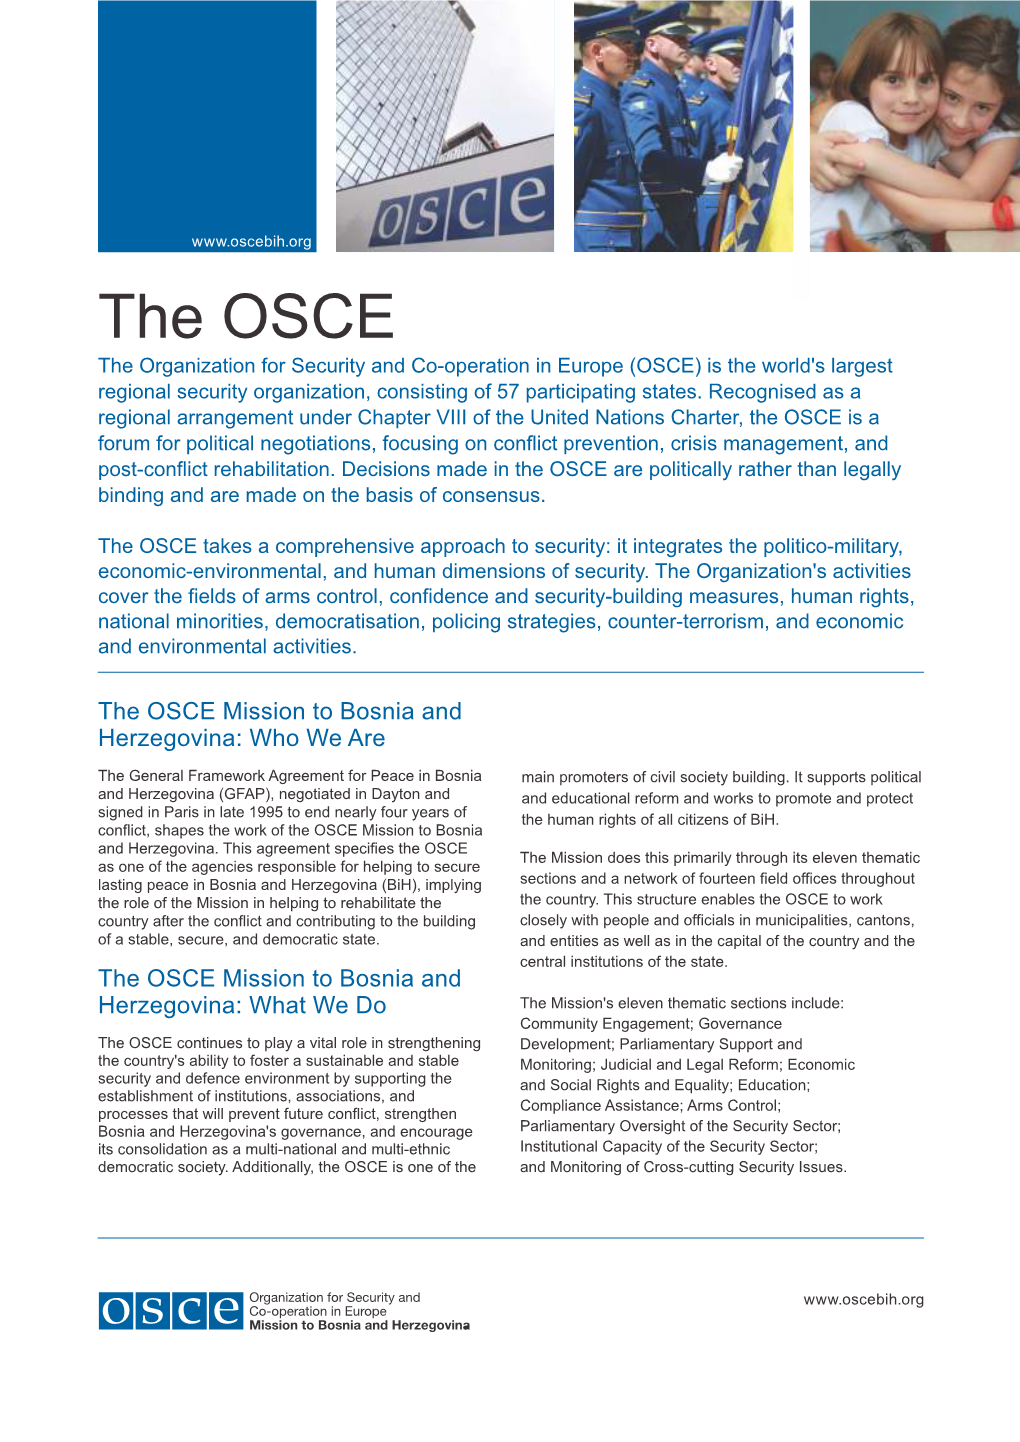 The OSCE Mission to Bosnia and Herzegovina Factsheet